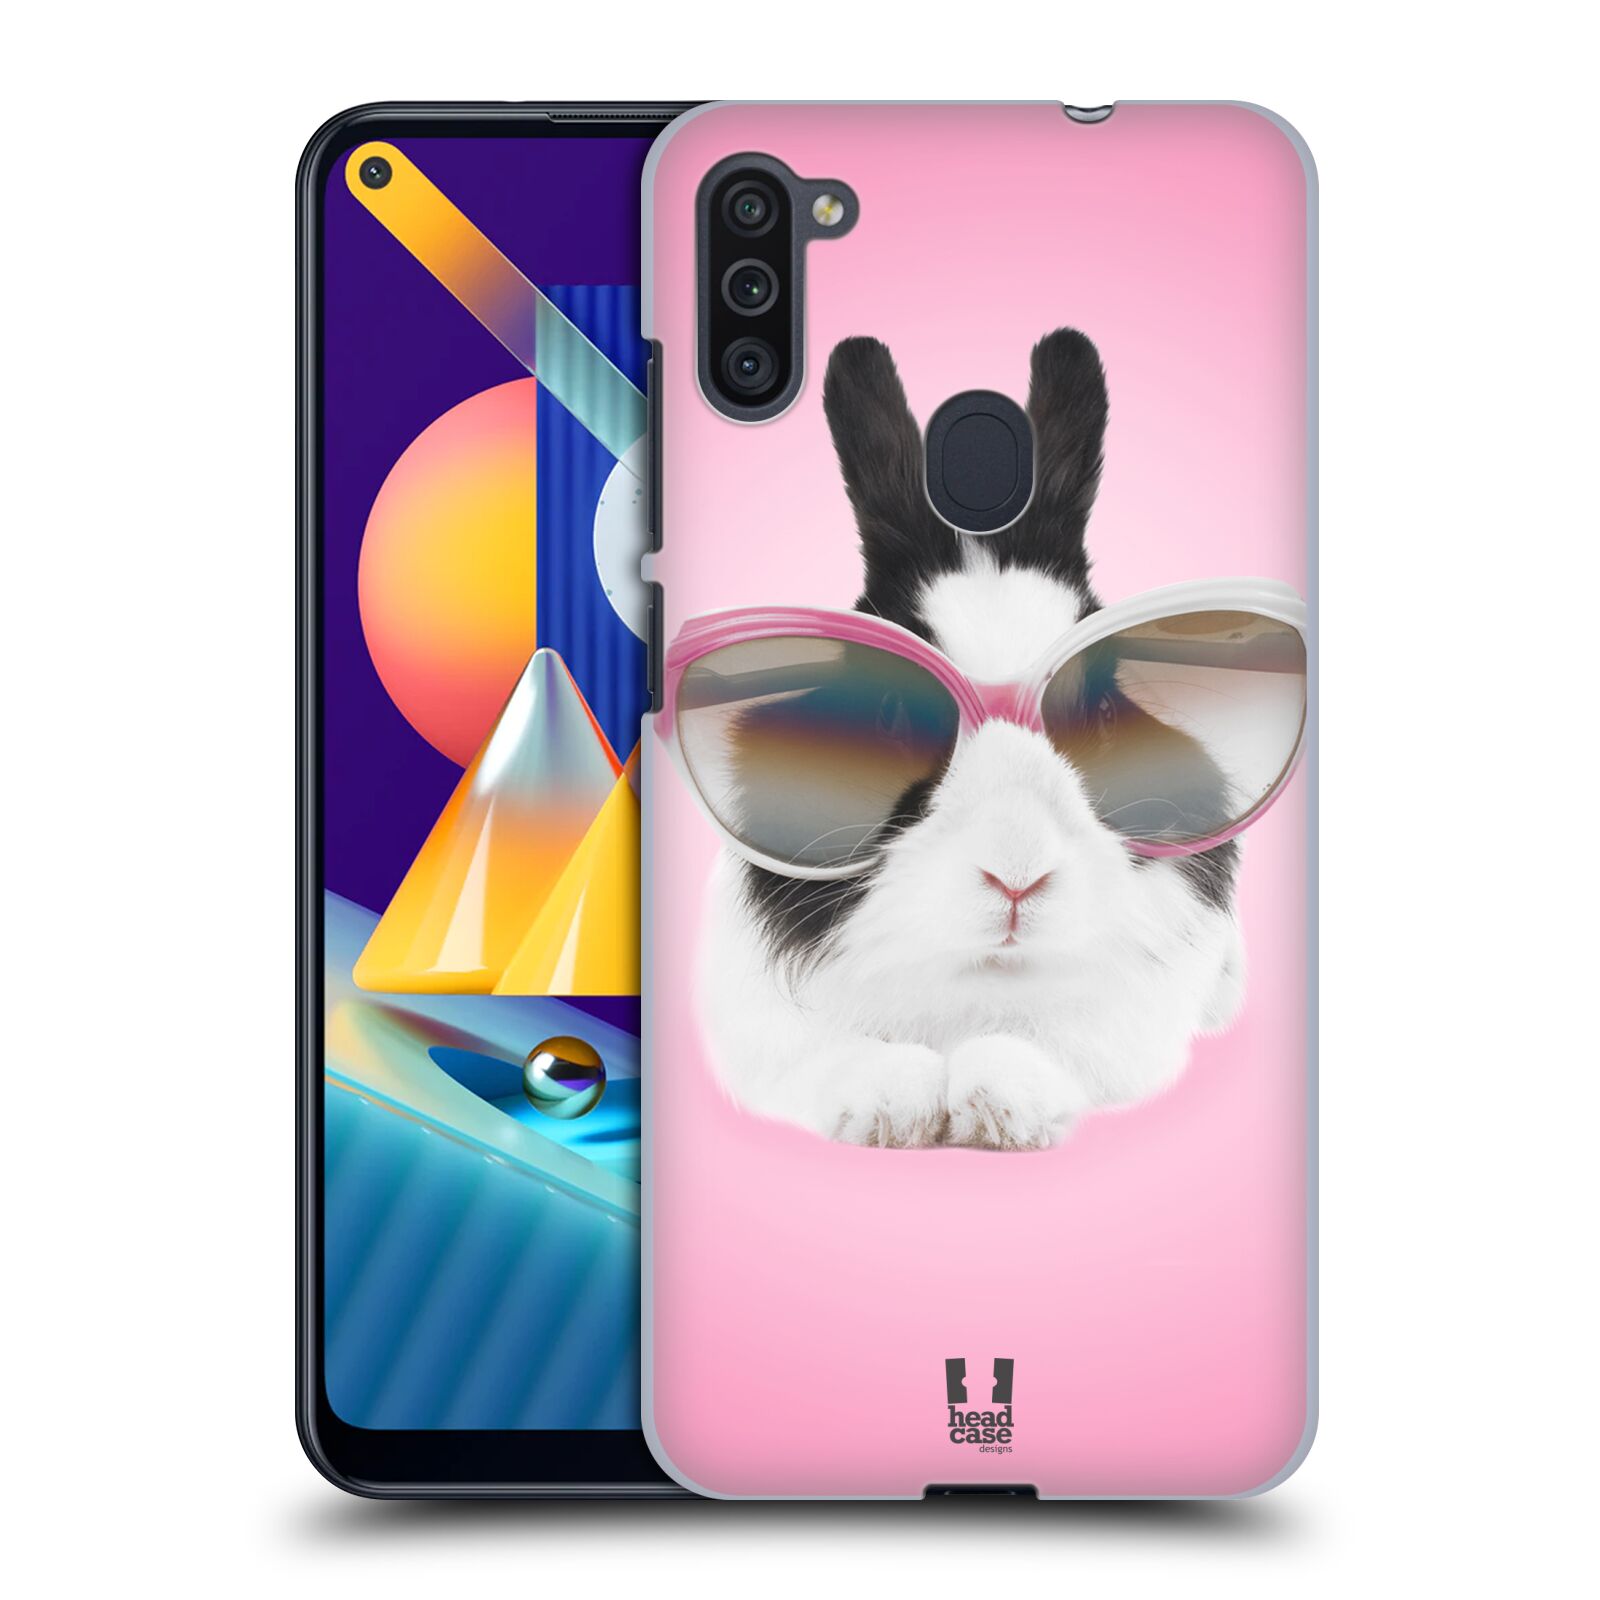 Plastový obal HEAD CASE na mobil Samsung Galaxy M11 vzor Legrační zvířátka roztomilý králíček s brýlemi růžová